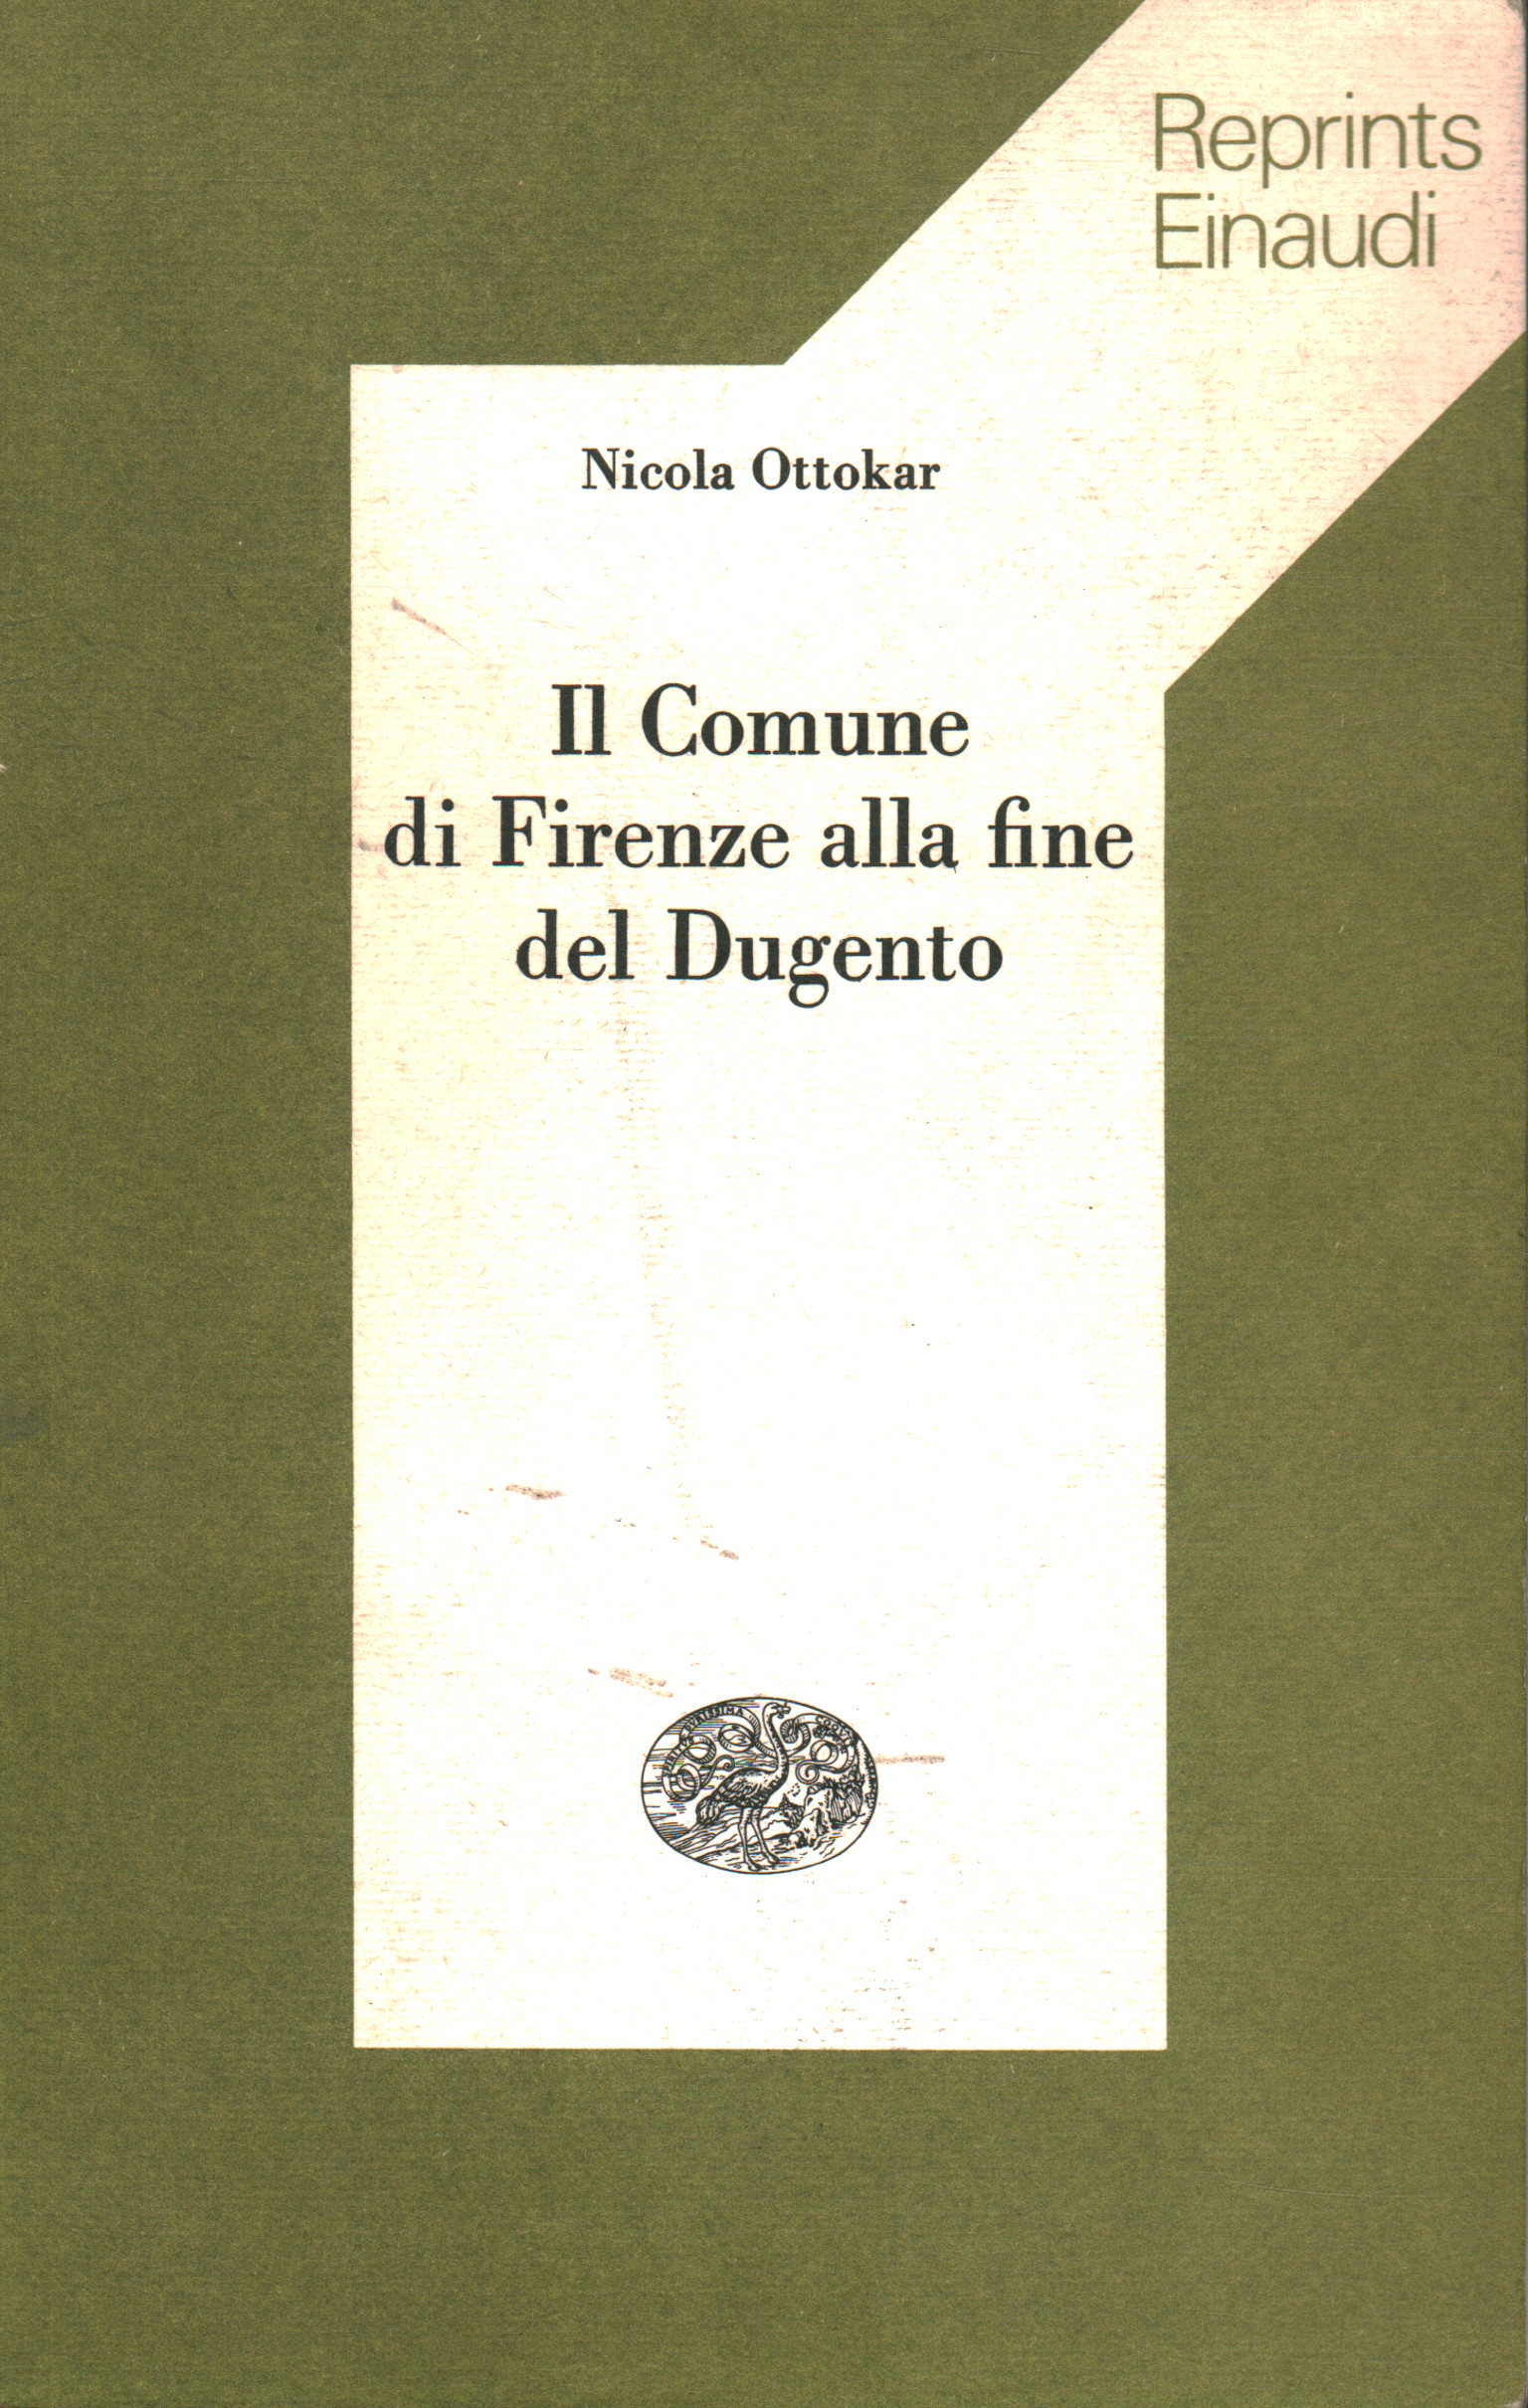 Il Comune di Firenze alla fine del Dugento, Nicola Ottokar